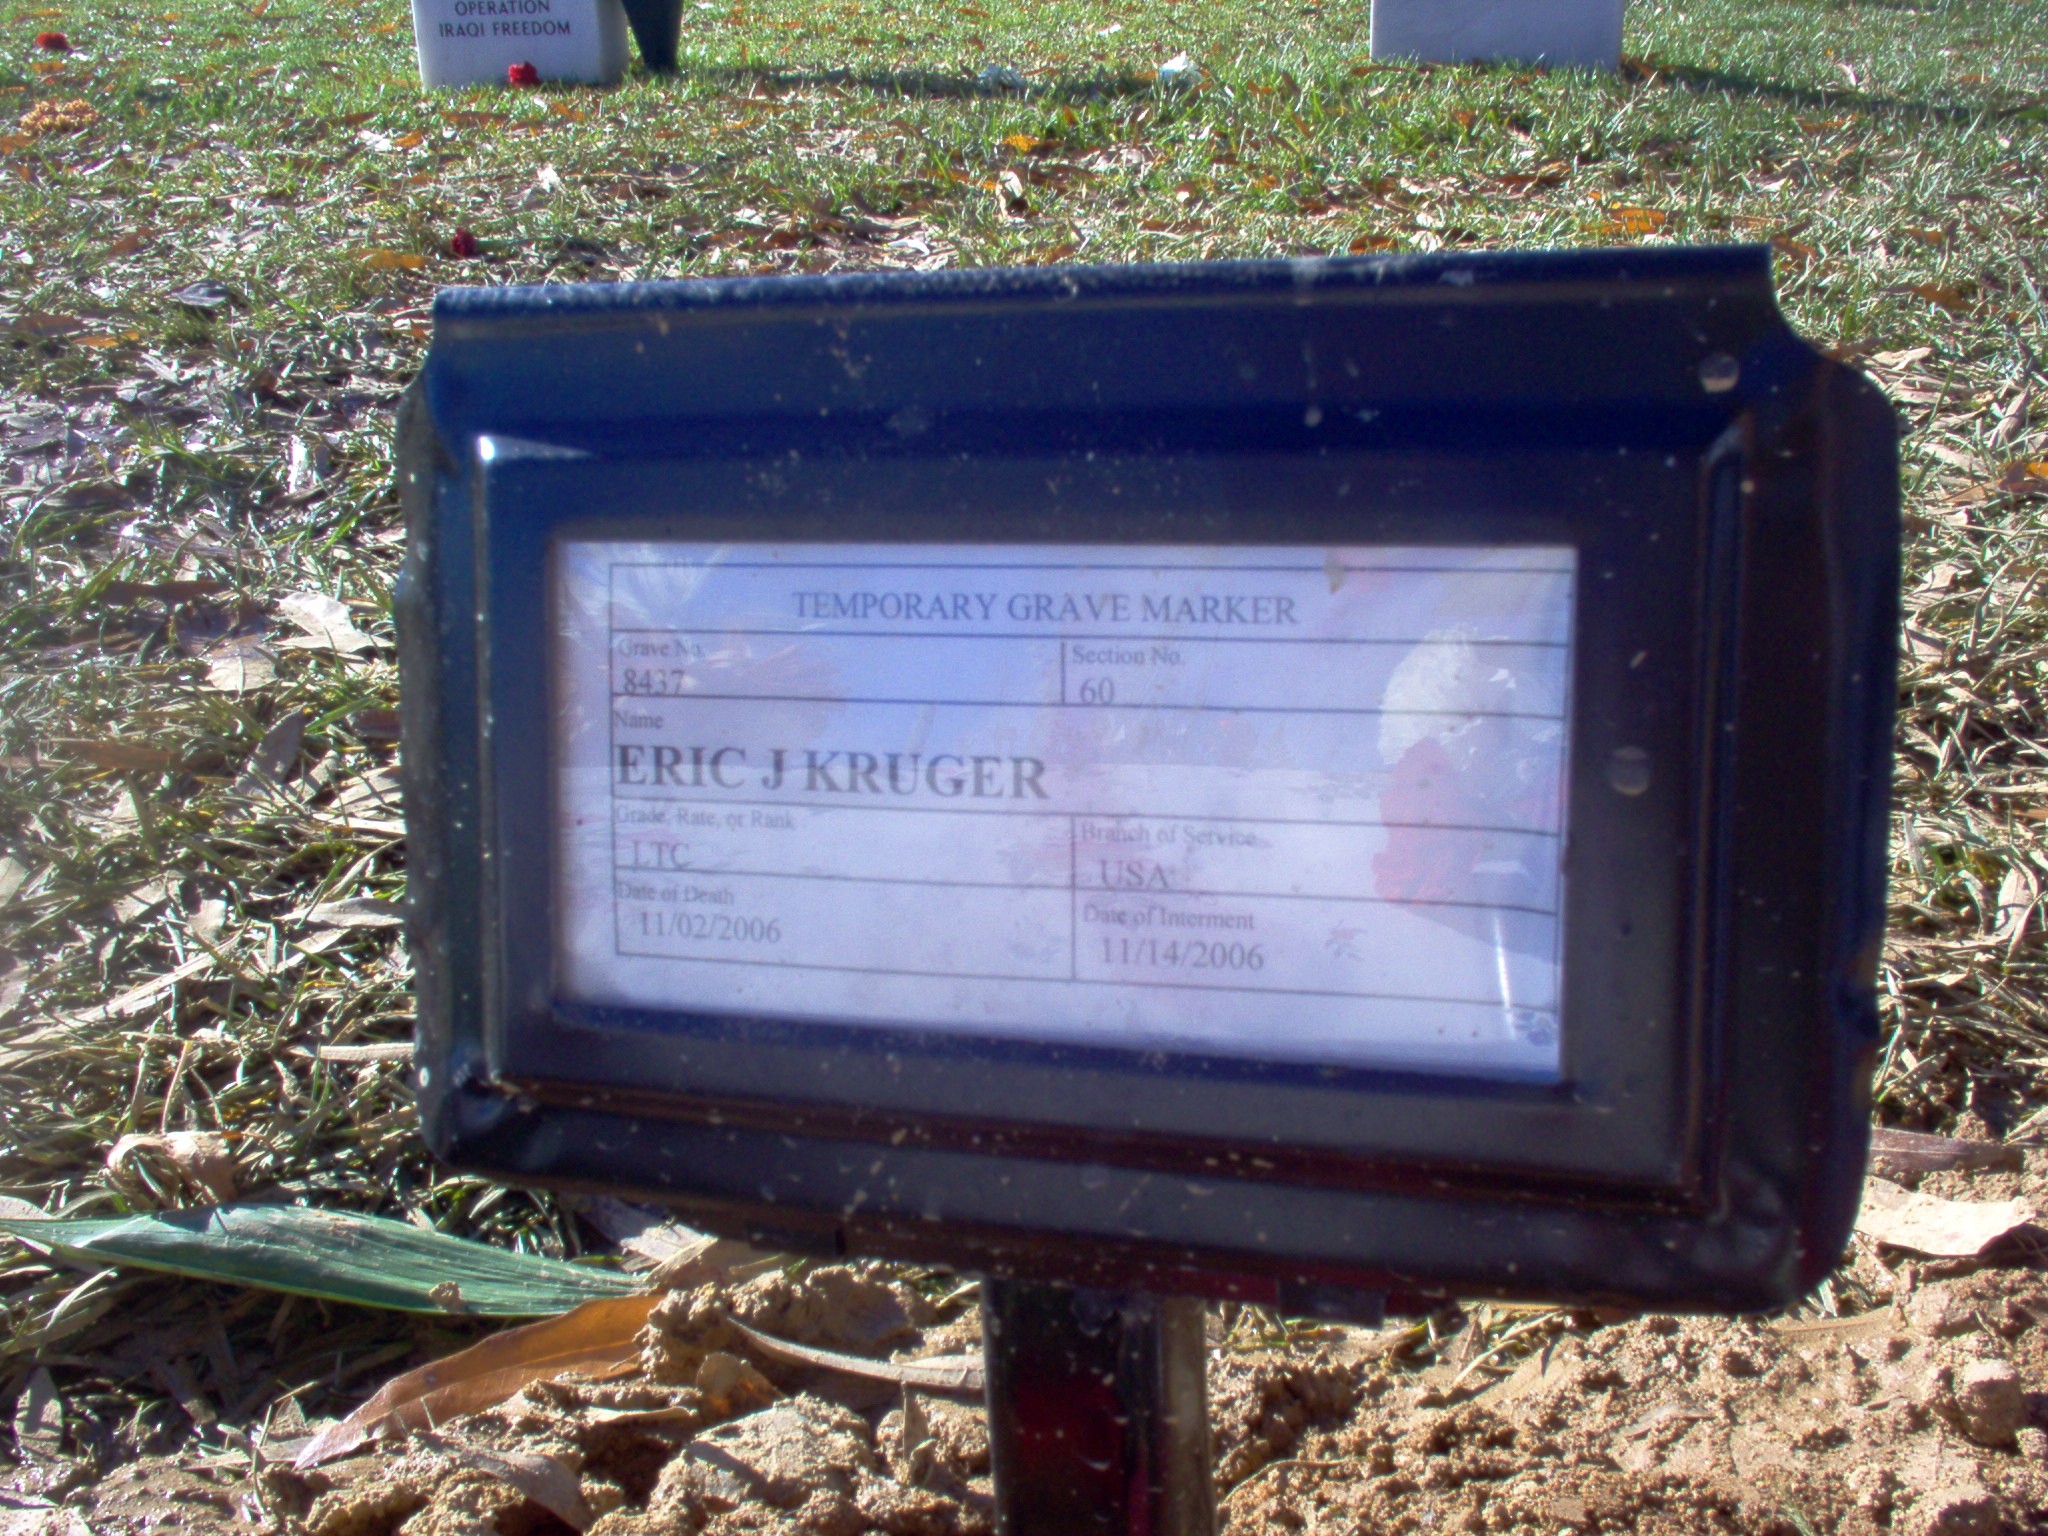 ejkruger-gravesite-photo-november-2006-001